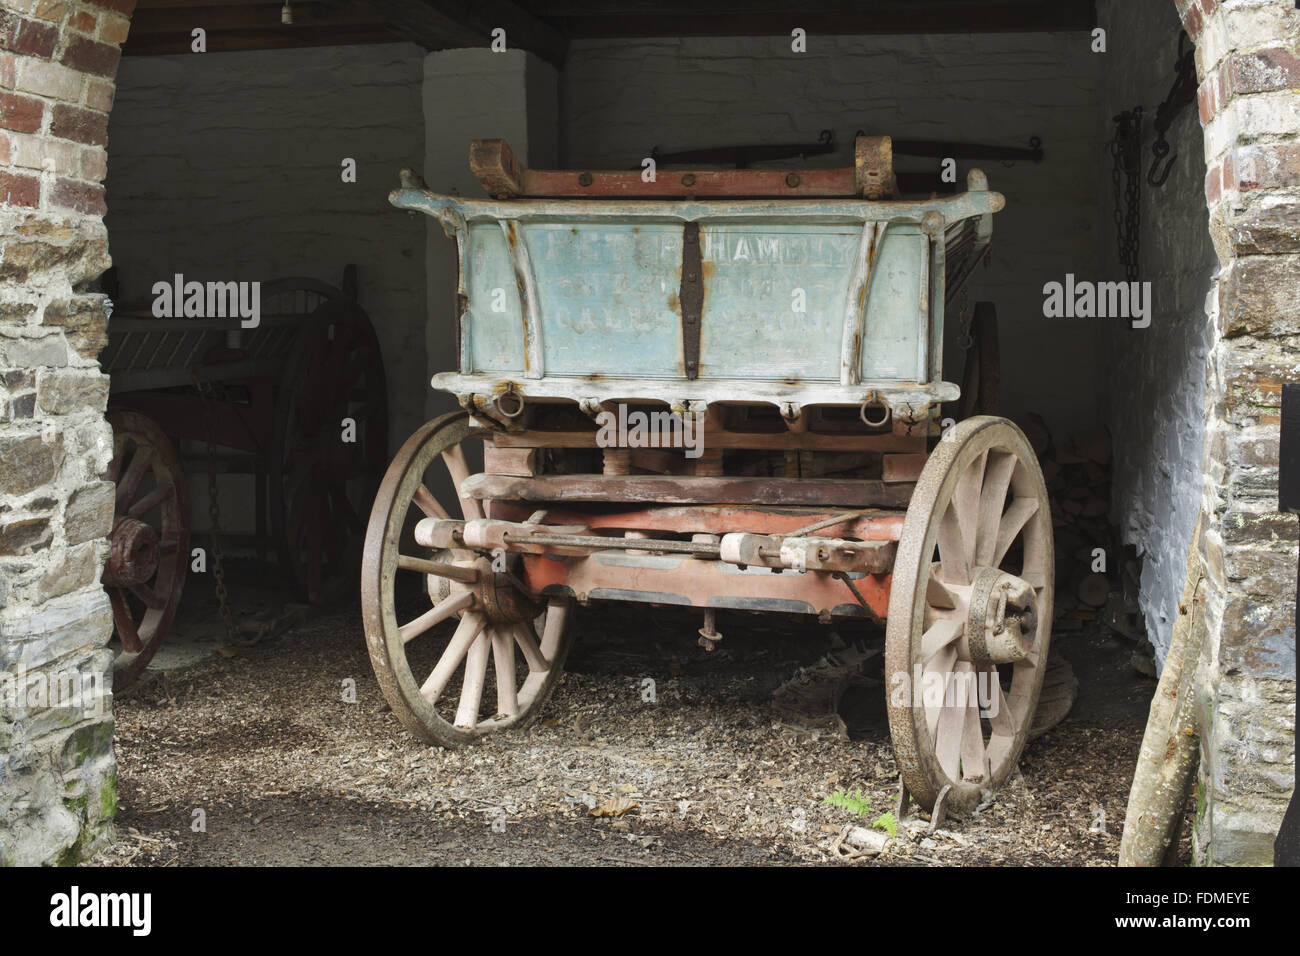 Der "Hambly" Wagen bei Cotehele, Cornwall. Es ist ein Brust-Kombi und stammte aus der Familie Hambly. National Trust Inventarnummer: 444591. Stockfoto